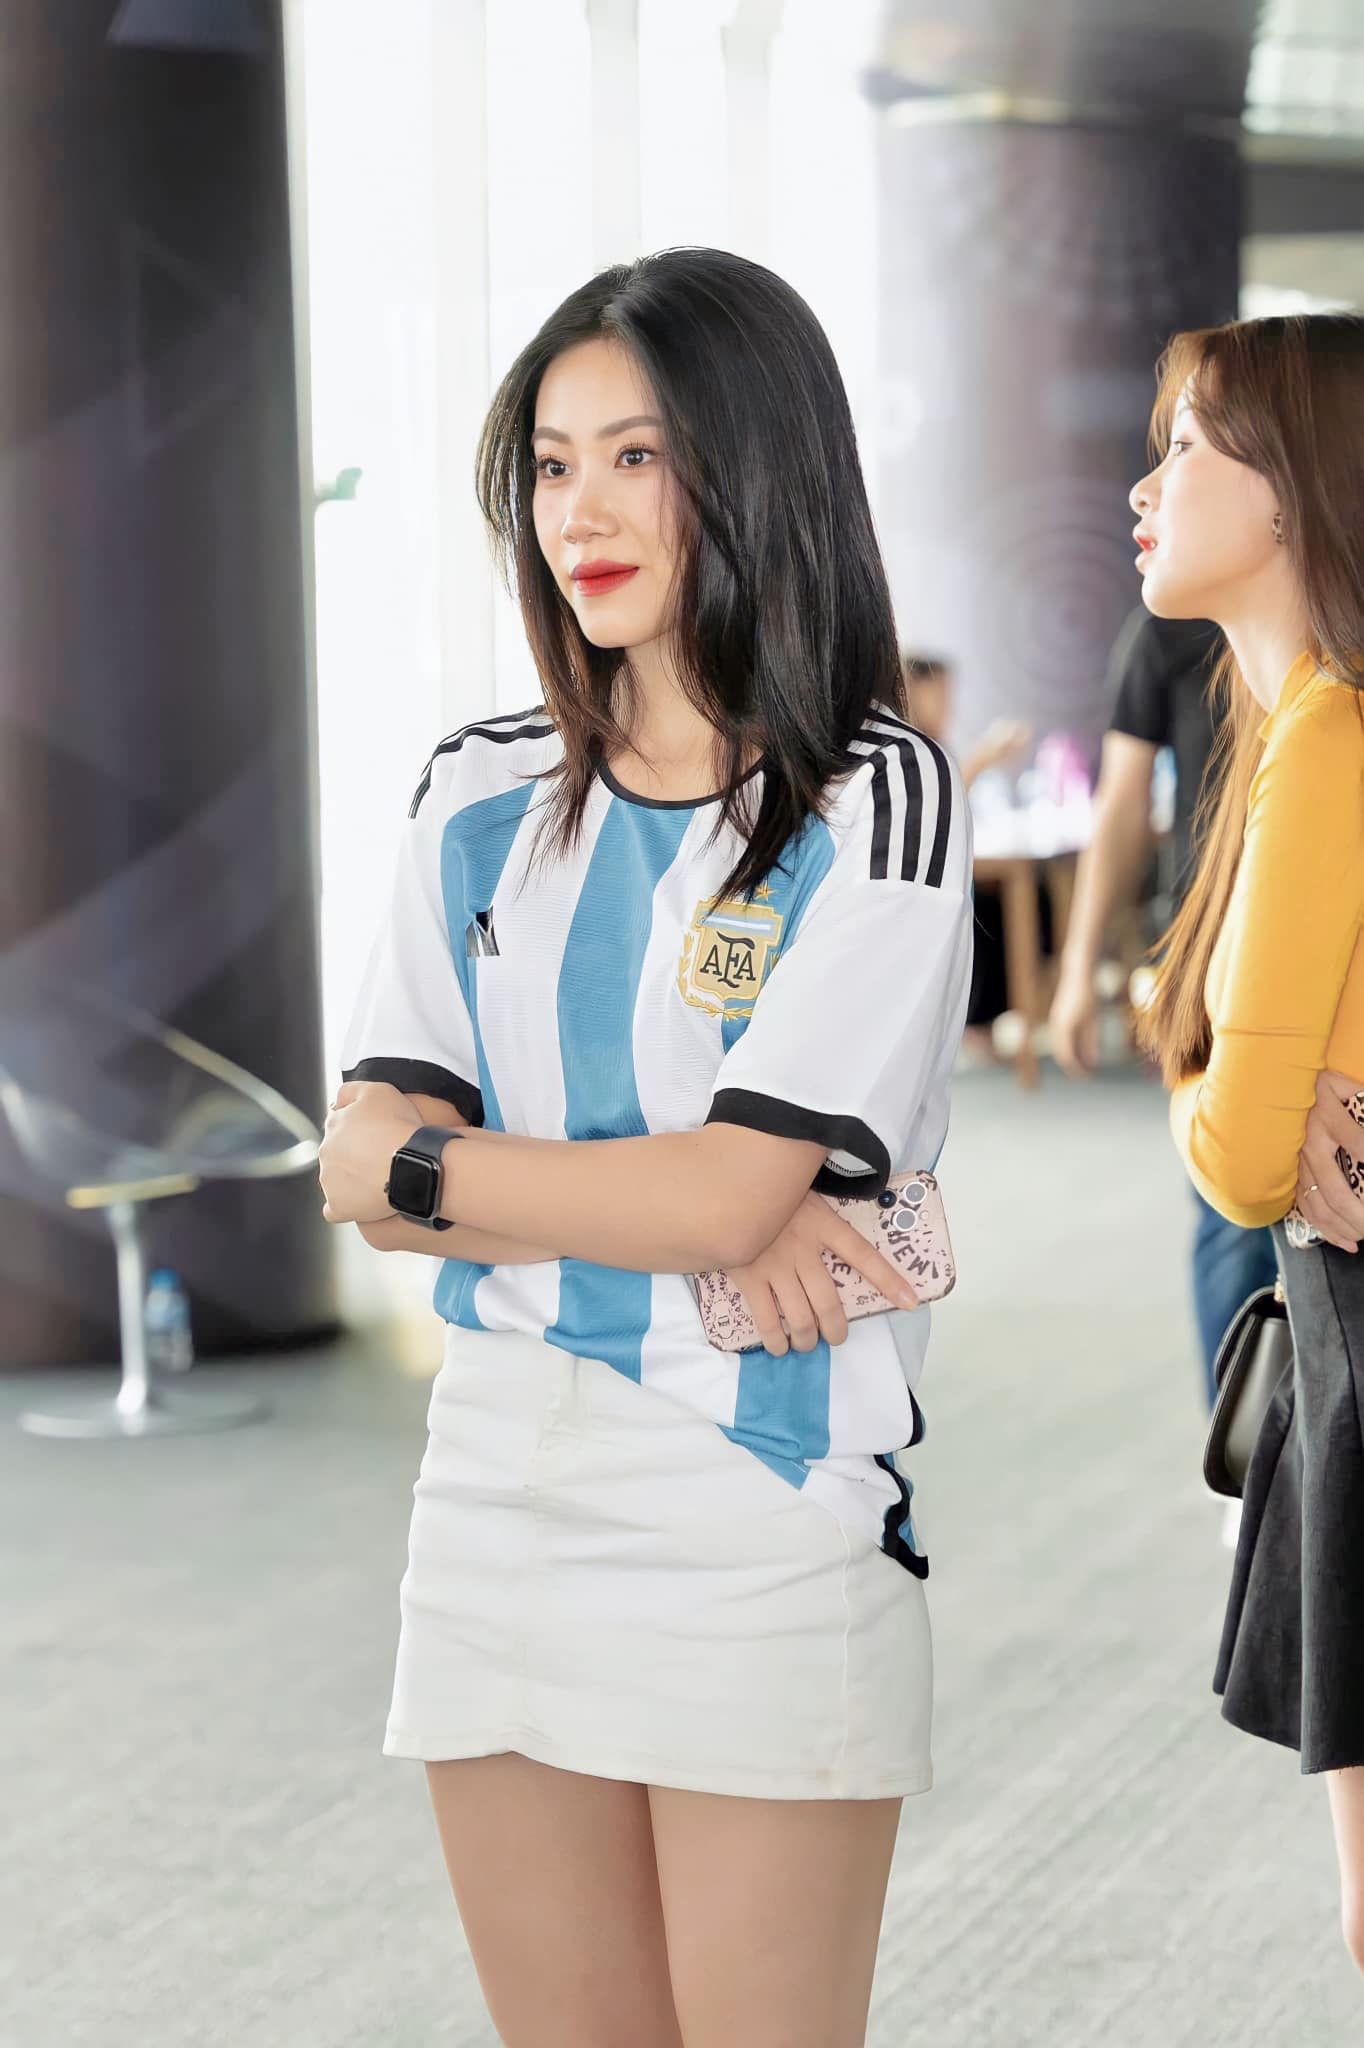 Nóng cùng World Cup: Sắc vóc xinh đẹp của hotgirl đại diện Argentina